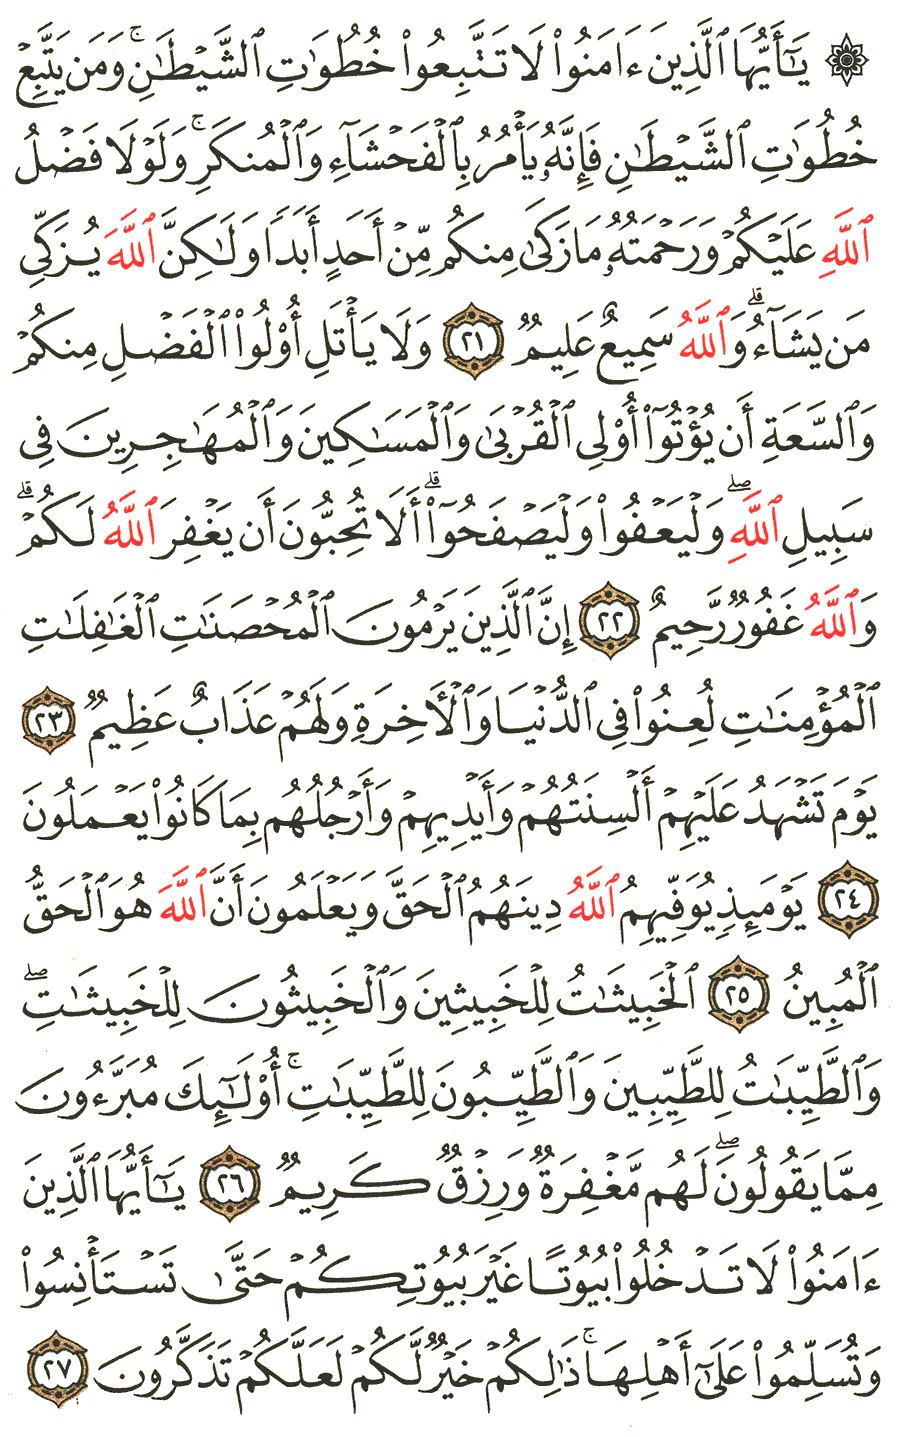 الصفحة رقم 352  من القرآن الكريم مكتوبة من المصحف